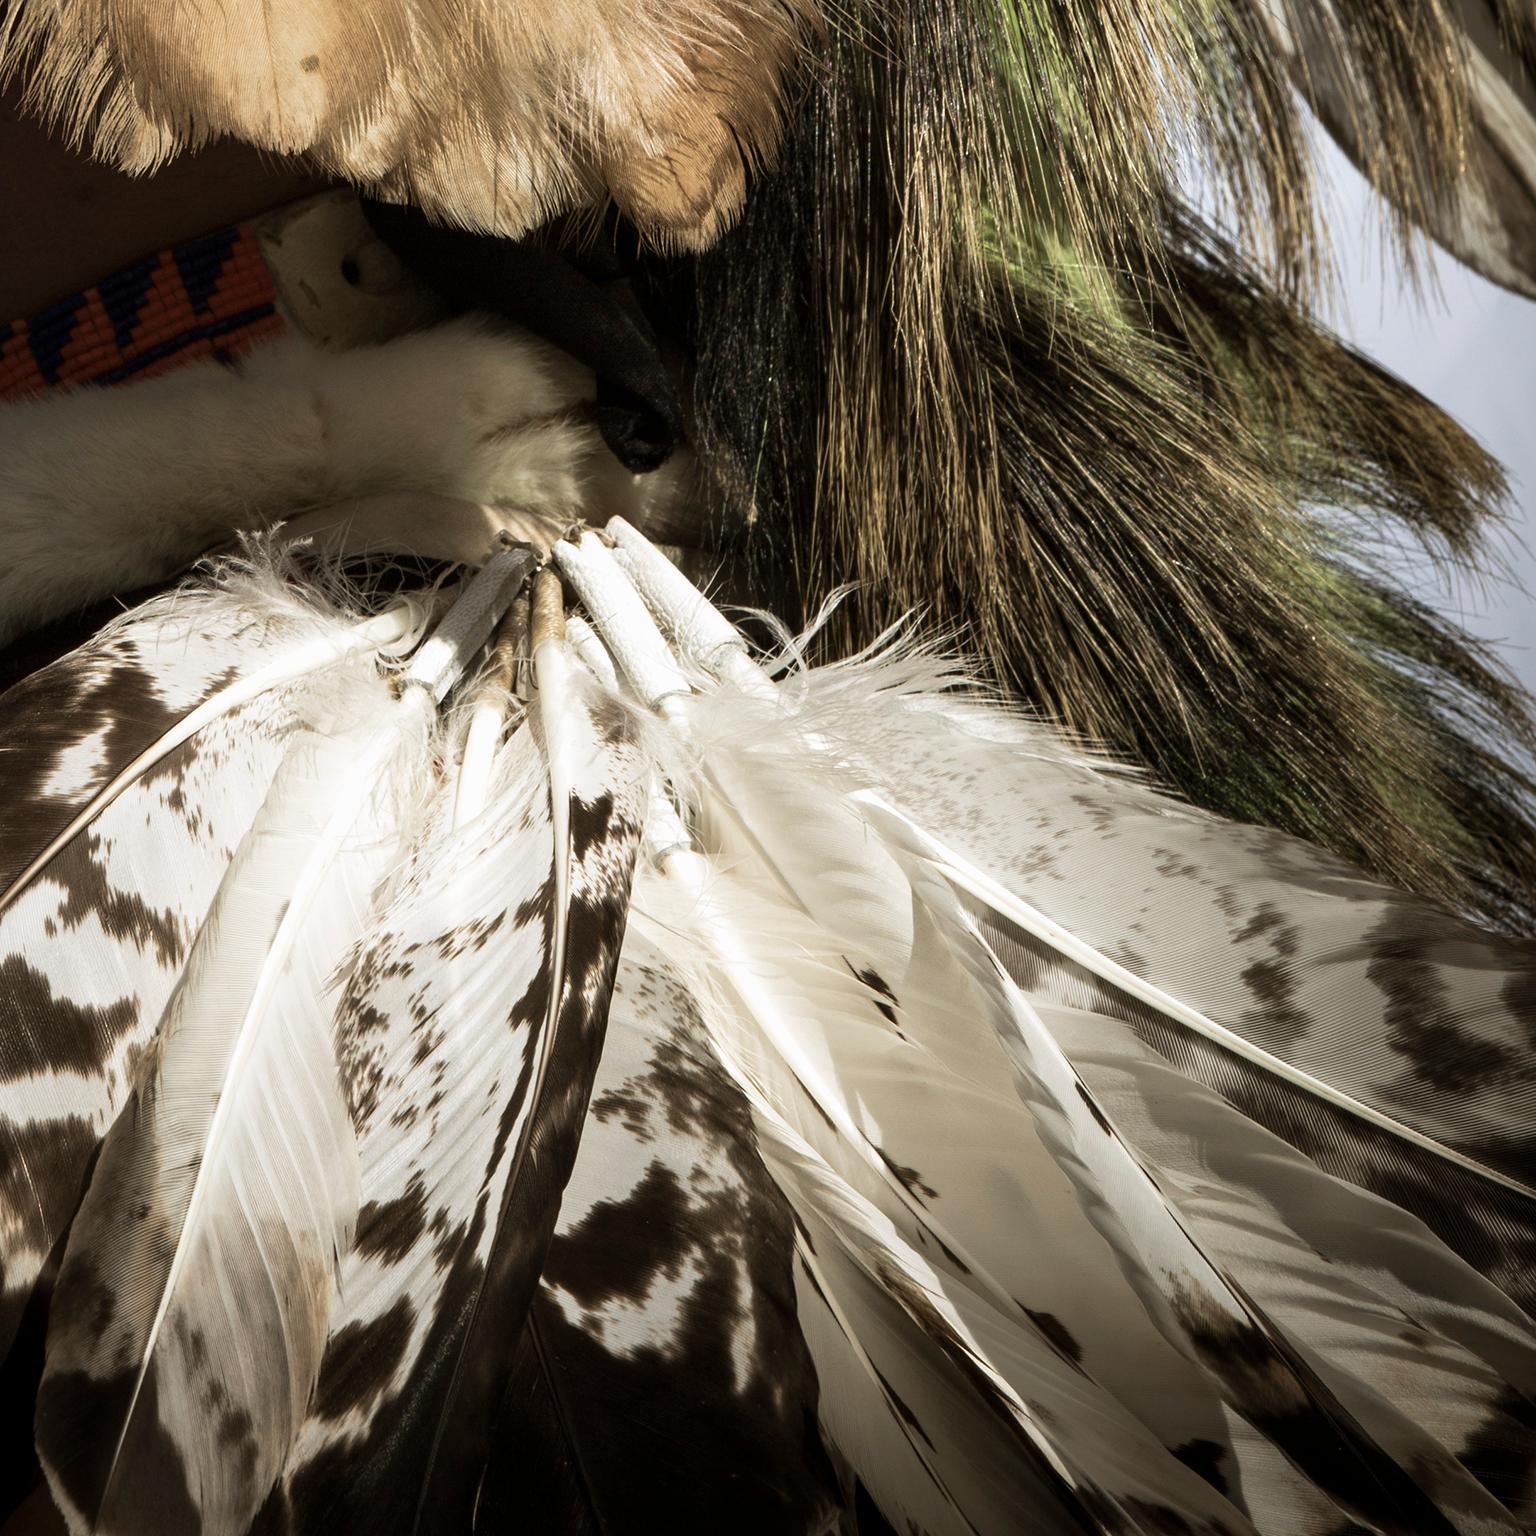 Porträt eines männlichen Tänzers der First Nations in traditionellem nordamerikanischem Kostüm – Photograph von  Cosmo Condina